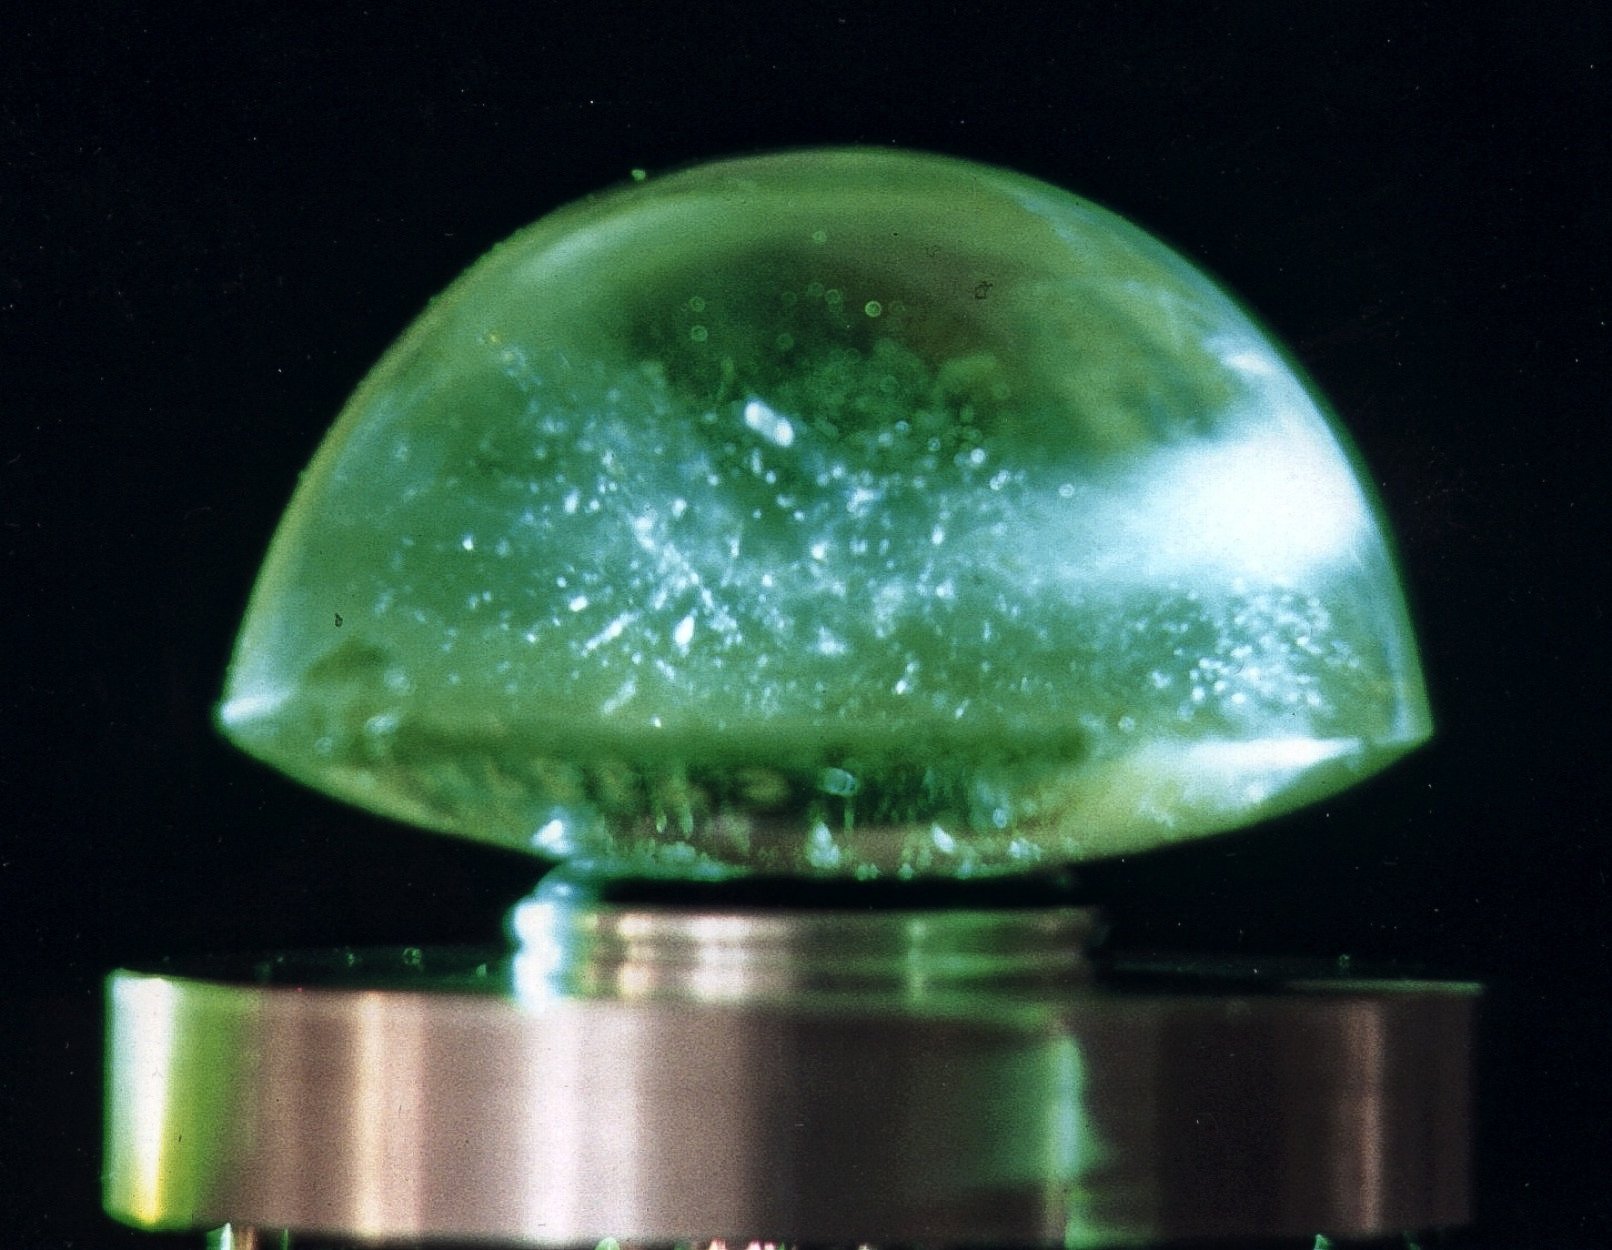 Thấu kính Visby cung cấp bằng chứng cho thấy các kỹ thuật chế tạo thấu kính tinh vi đã được các nghệ nhân sử dụng hơn 1,000 năm trước, vào thời điểm mà các nhà nghiên cứu chỉ mới bắt đầu khám phá quy luật khúc xạ. Các ống kính chắc hẳn đã được thực hiện bởi nhiều lần thử nghiệm và sai sót.